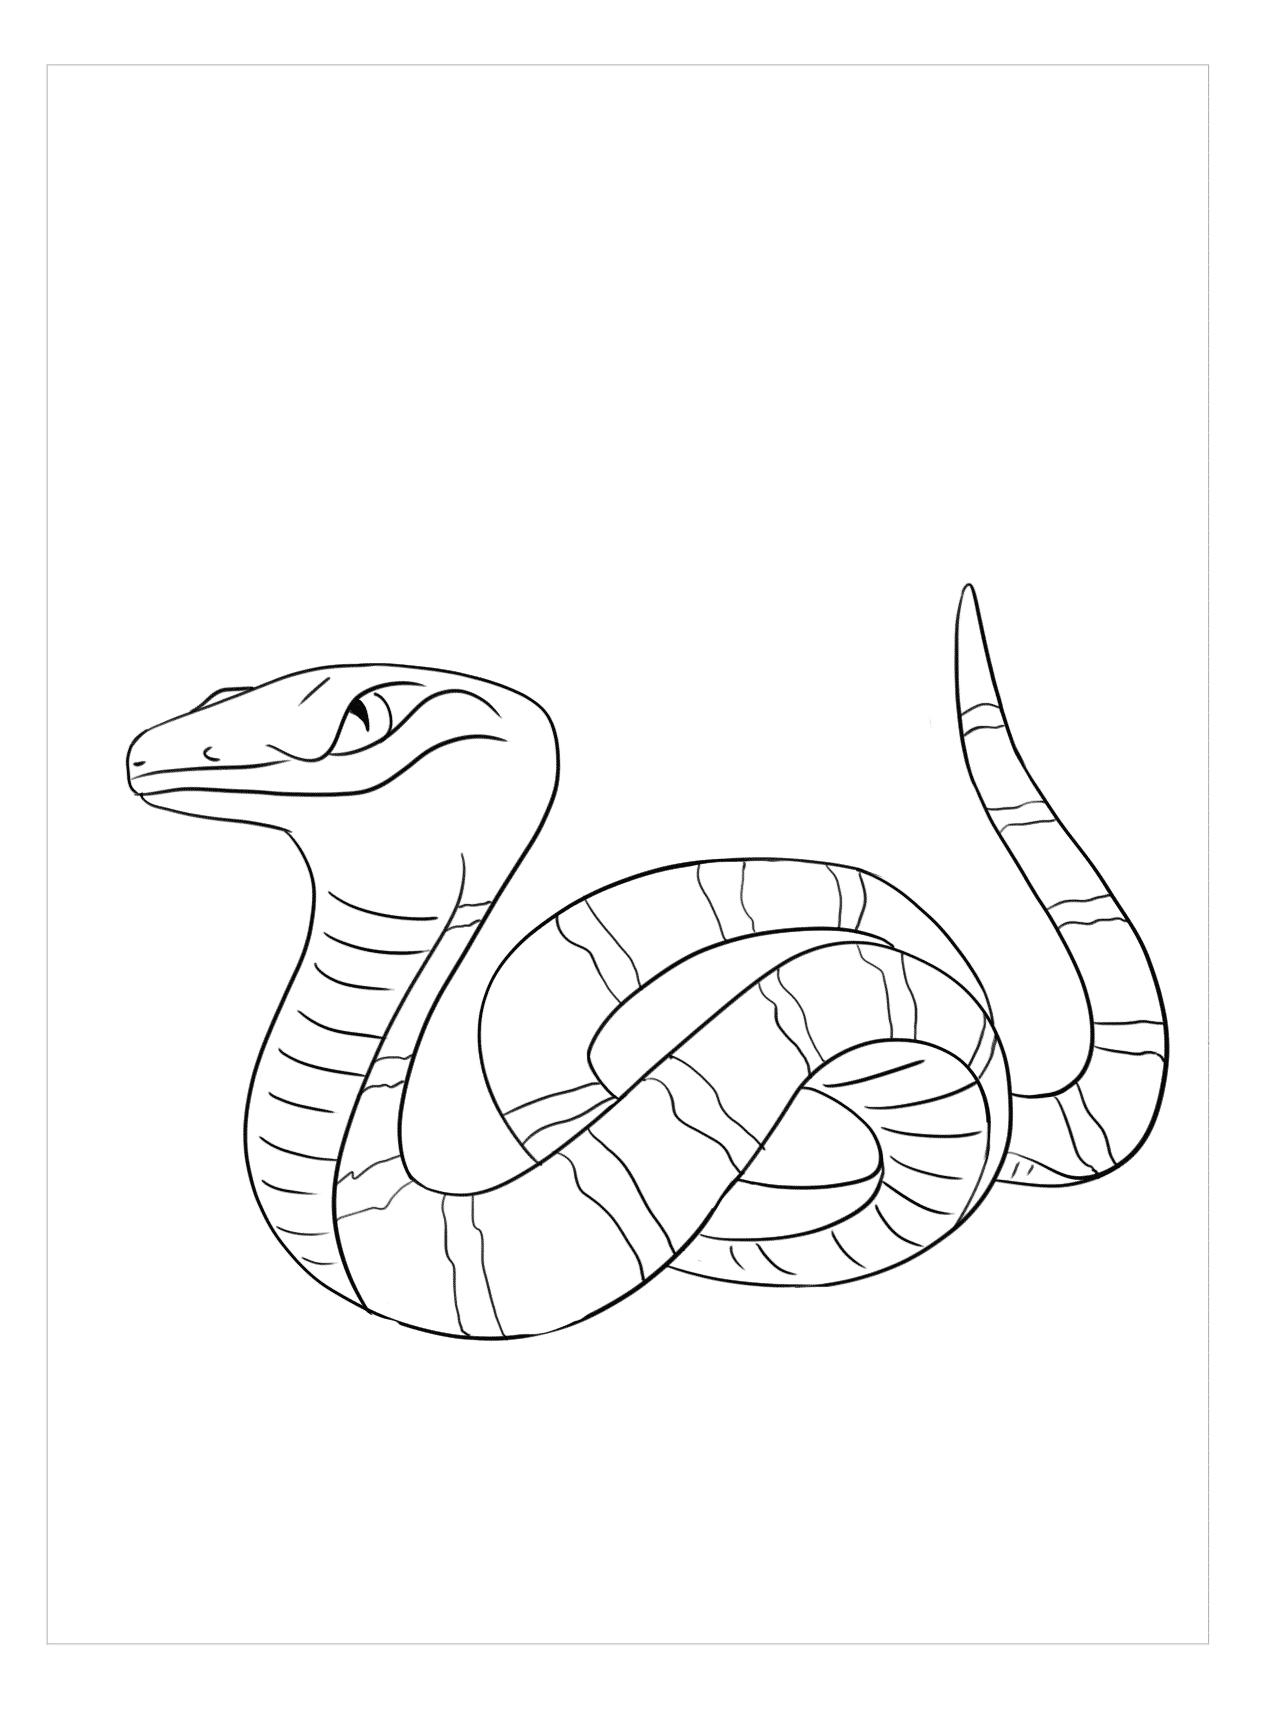 Hình vẽ con rắn là sự kết hợp giữa nghệ thuật và khoa học, tạo nên những tác phẩm độc đáo và ấn tượng. Hãy cùng thưởng thức và khám phá không gian vô tận của những hình vẽ này.